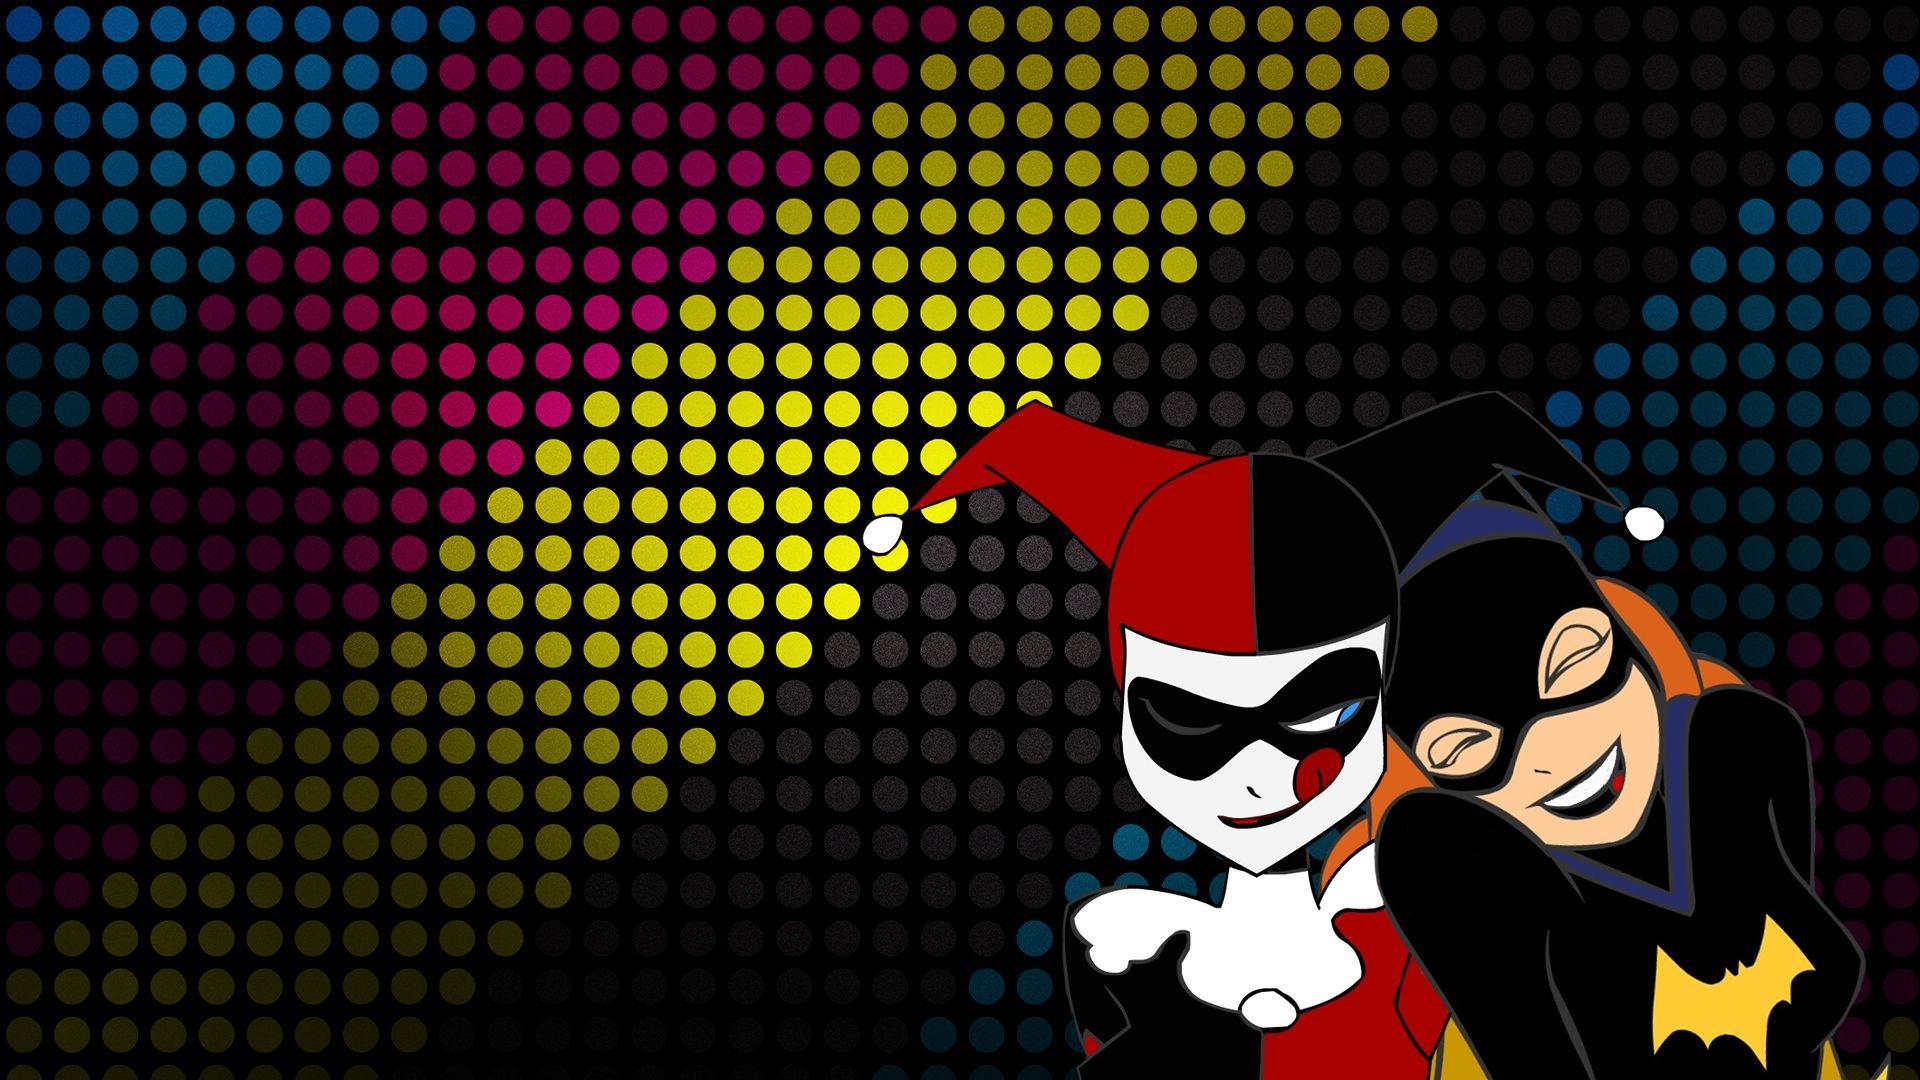 Batgirl HD Wallpaper